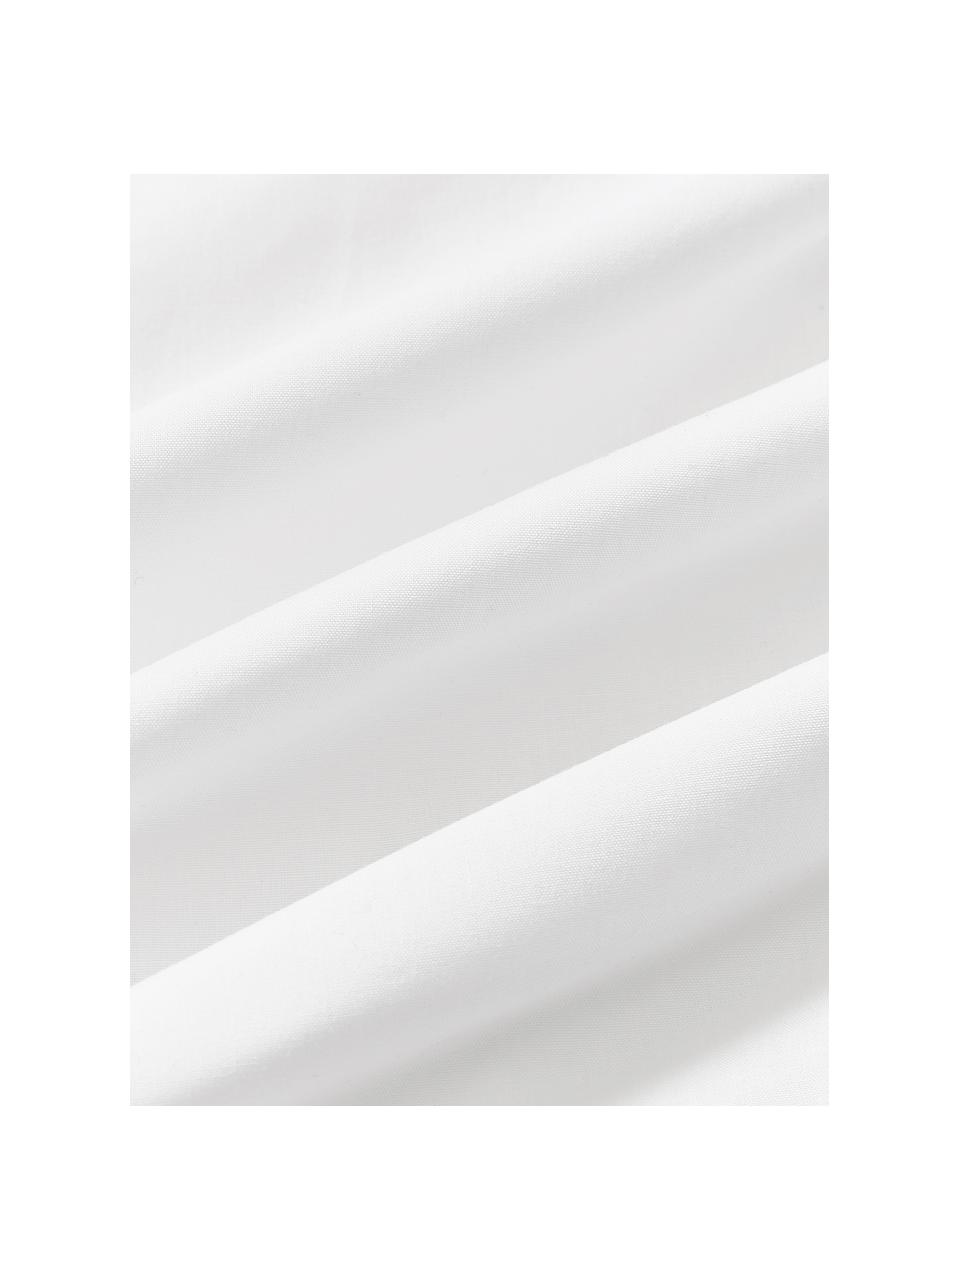 Copripiumino in cotone percalle con motivo trapuntato effetto origami Bordy, Bianco, Larg. 200 x Lung. 200 cm